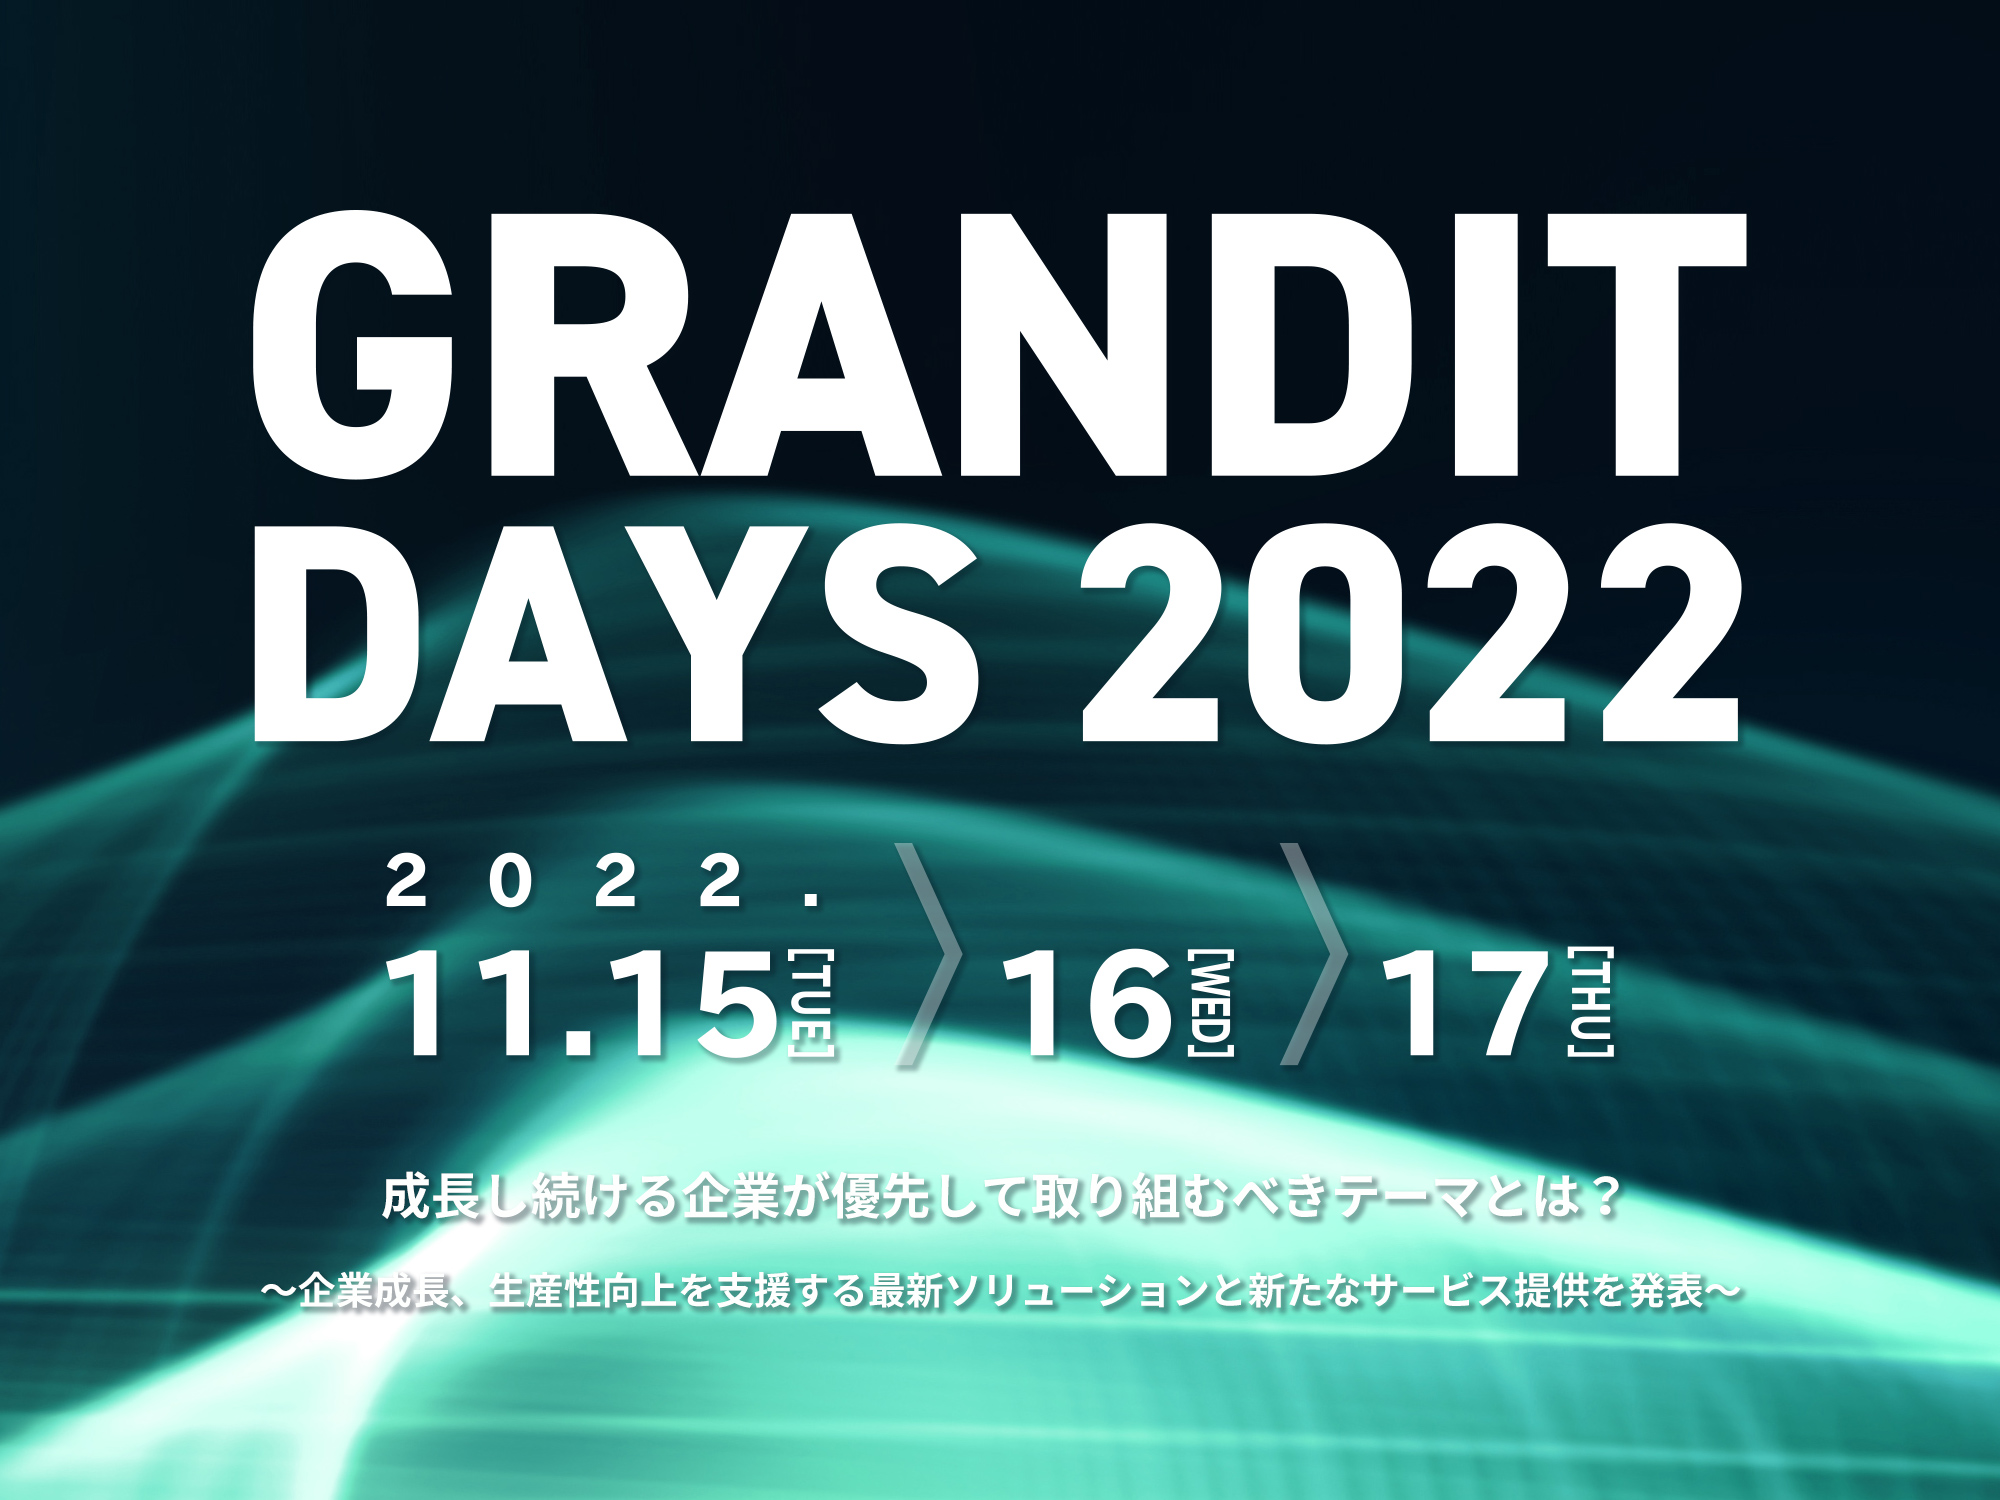  GRANDIT DAYS 2022成長し続ける企業が優先して取り組むべきテーマとは？ ～企業成長、生産性向上を支援する最新ソリューションと新たなサービス提供を発表～